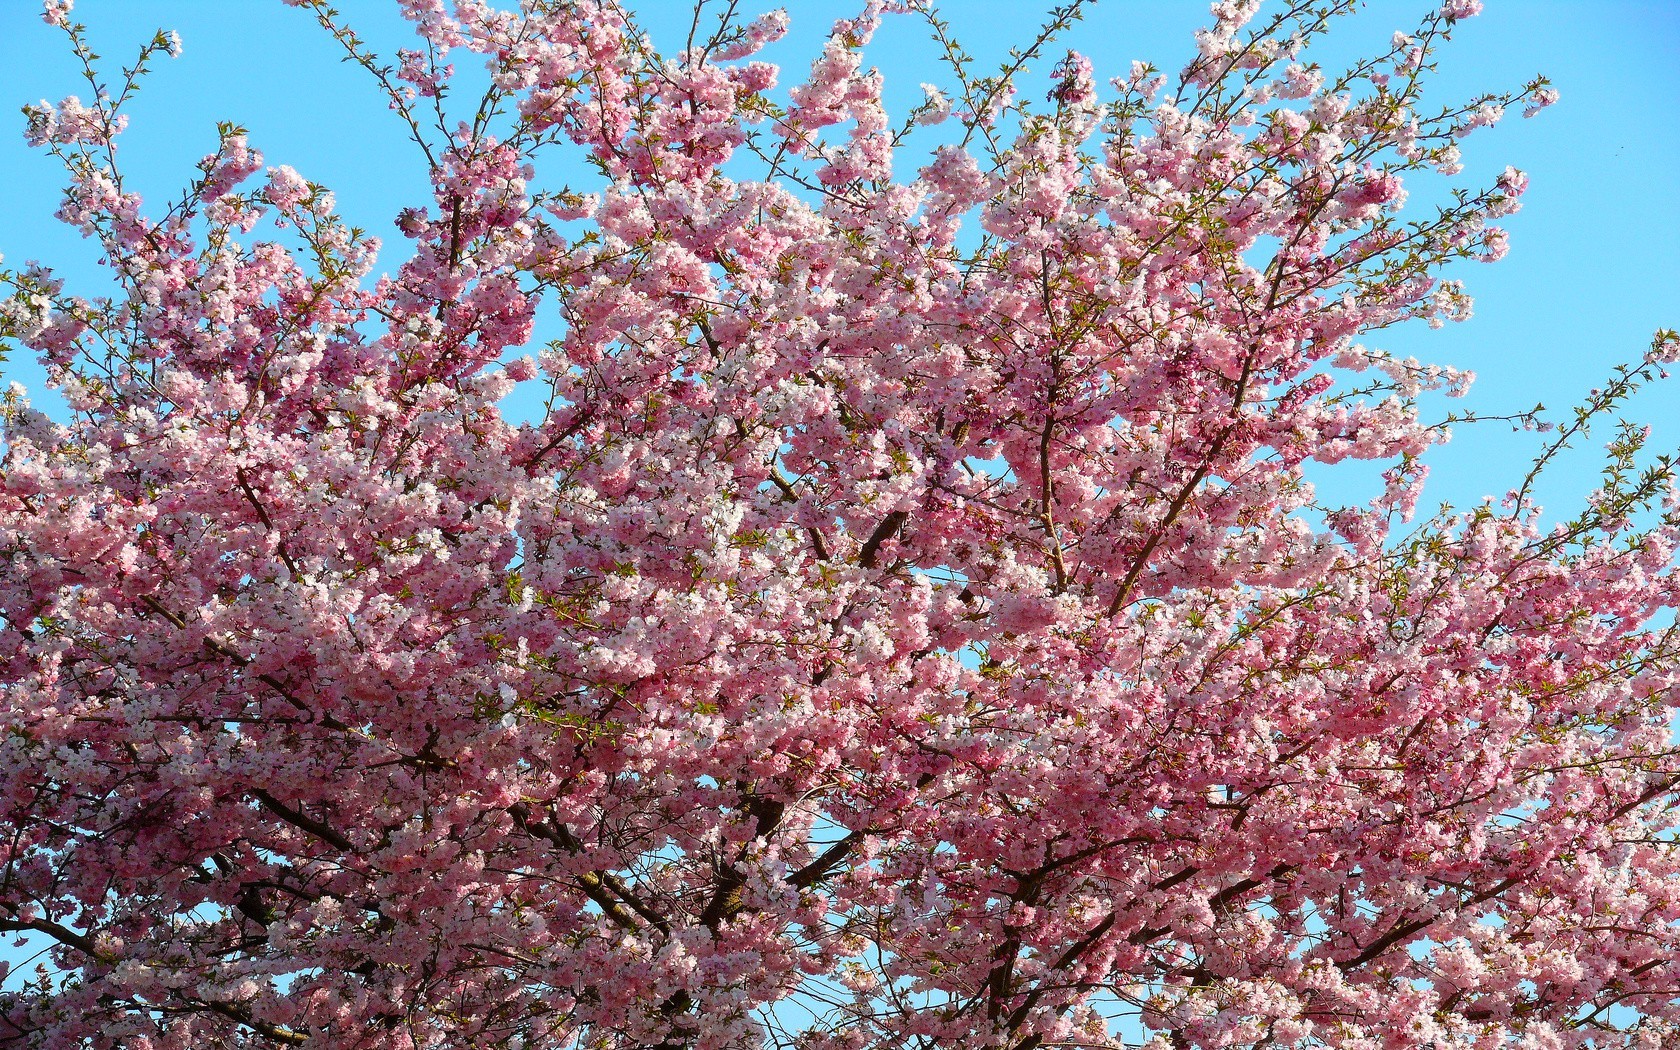 والپیپر nature full hd خوشگل با طرح شکوفه های صورتی رویایی در فصل بهار